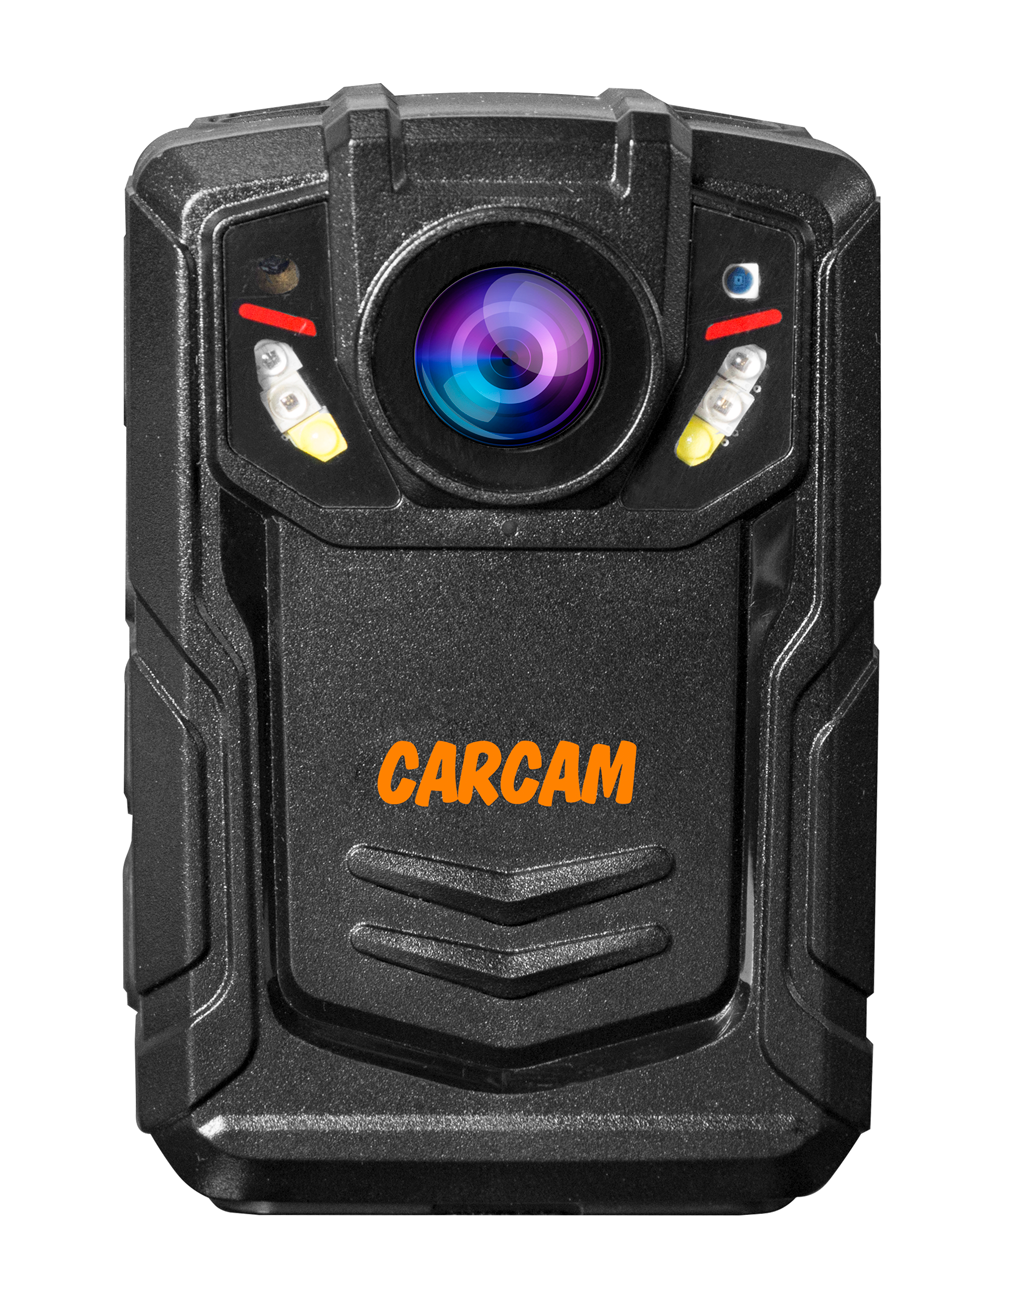 Персональный Quad HD видеорегистратор  CARCAM COMBAT 2S/4G 128GB персональный видеорегистратор carcam combat 2s pro 128gb